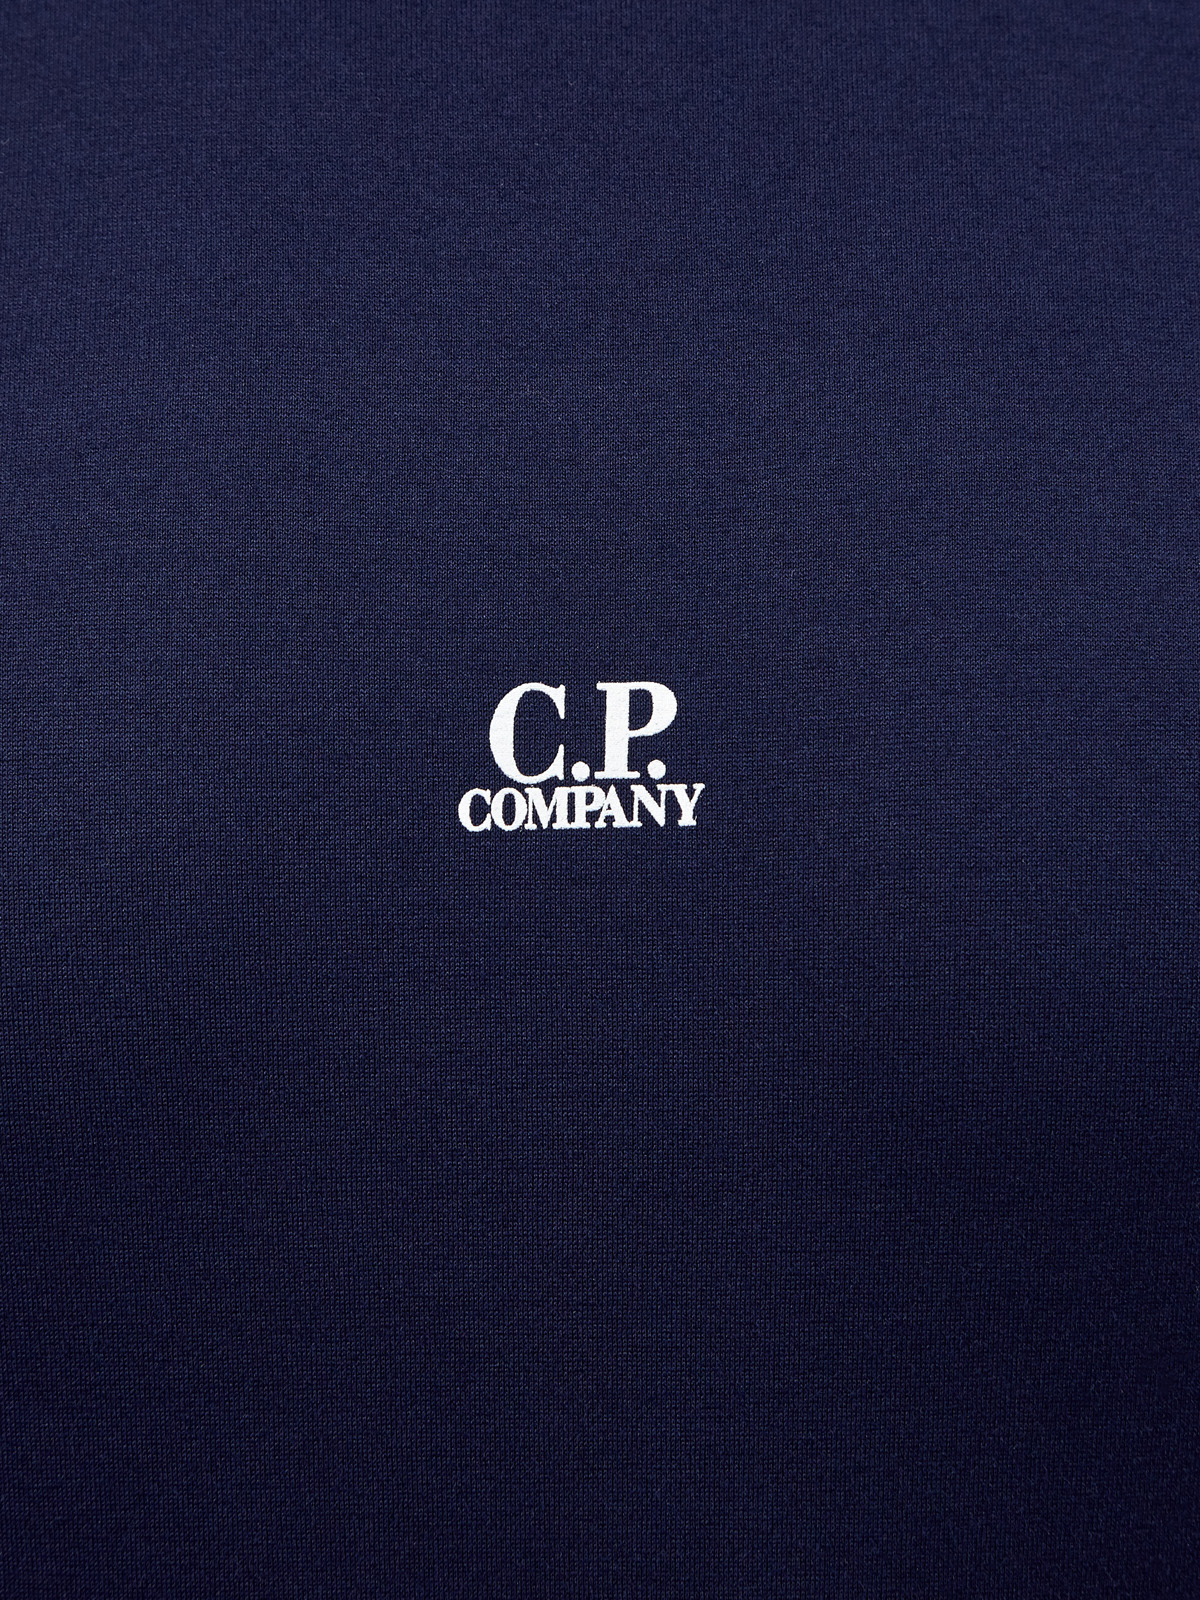 Однотонная футболка из хлопка джерси с логотипом C.P.COMPANY, цвет синий, размер 46;48;50;52;54;56 - фото 5